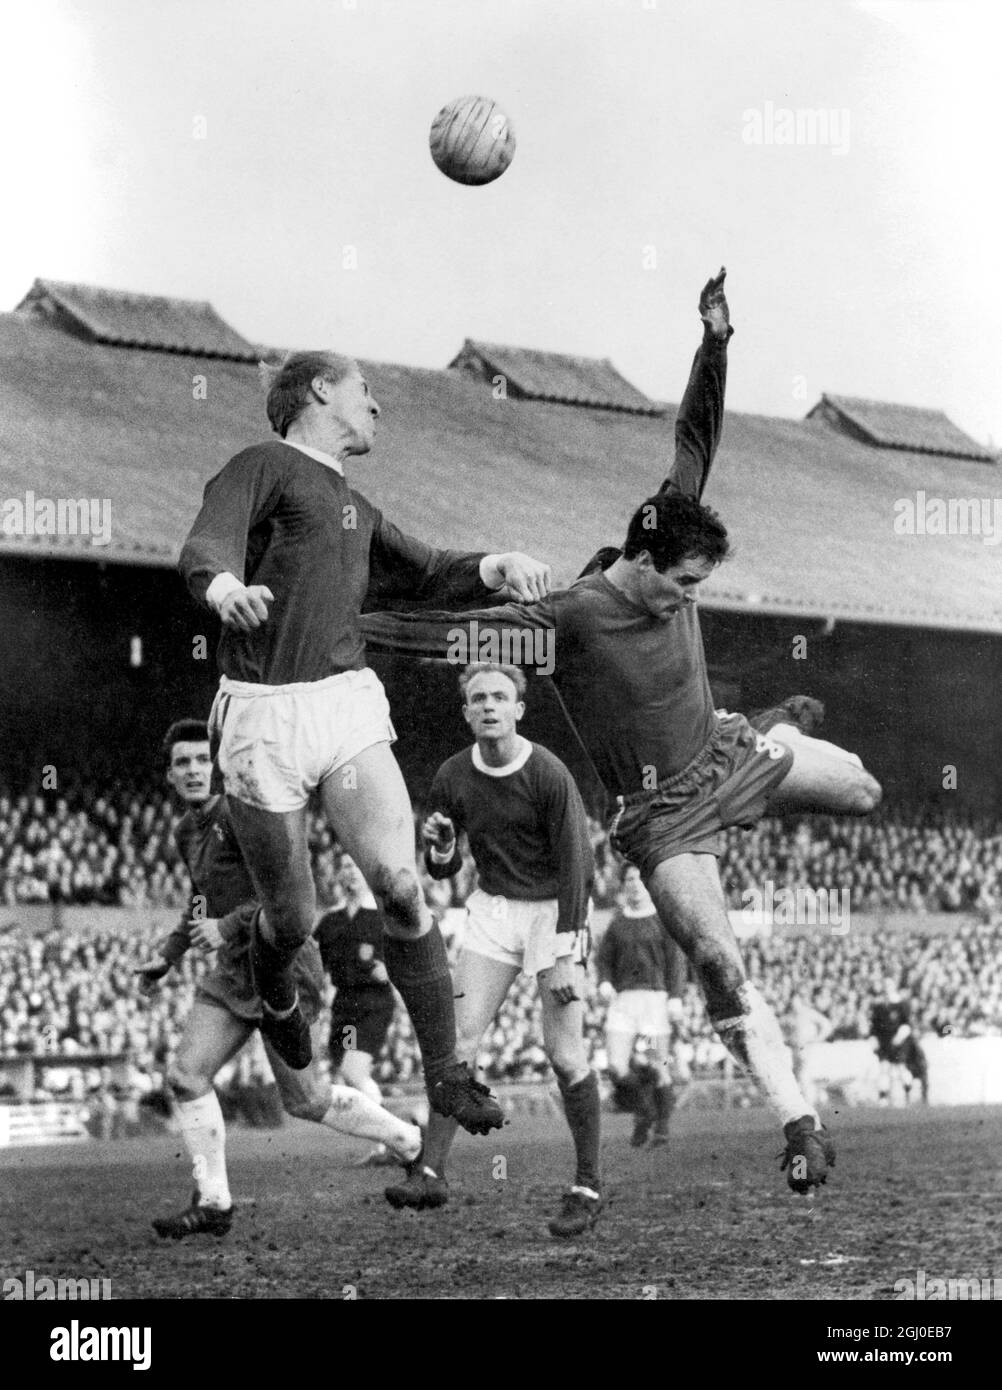 Chelsea gegen Arsenal Ure, die linke Hälfte des Arsenals auf der linken Seite, schlägt George Graham, den Chelsea, nach rechts, zu einem Heading-Duell während des Spiels an der Stamford Bridge. Das Spiel endete in einem Unentschieden von 0-0. Februar 1966. Stockfoto